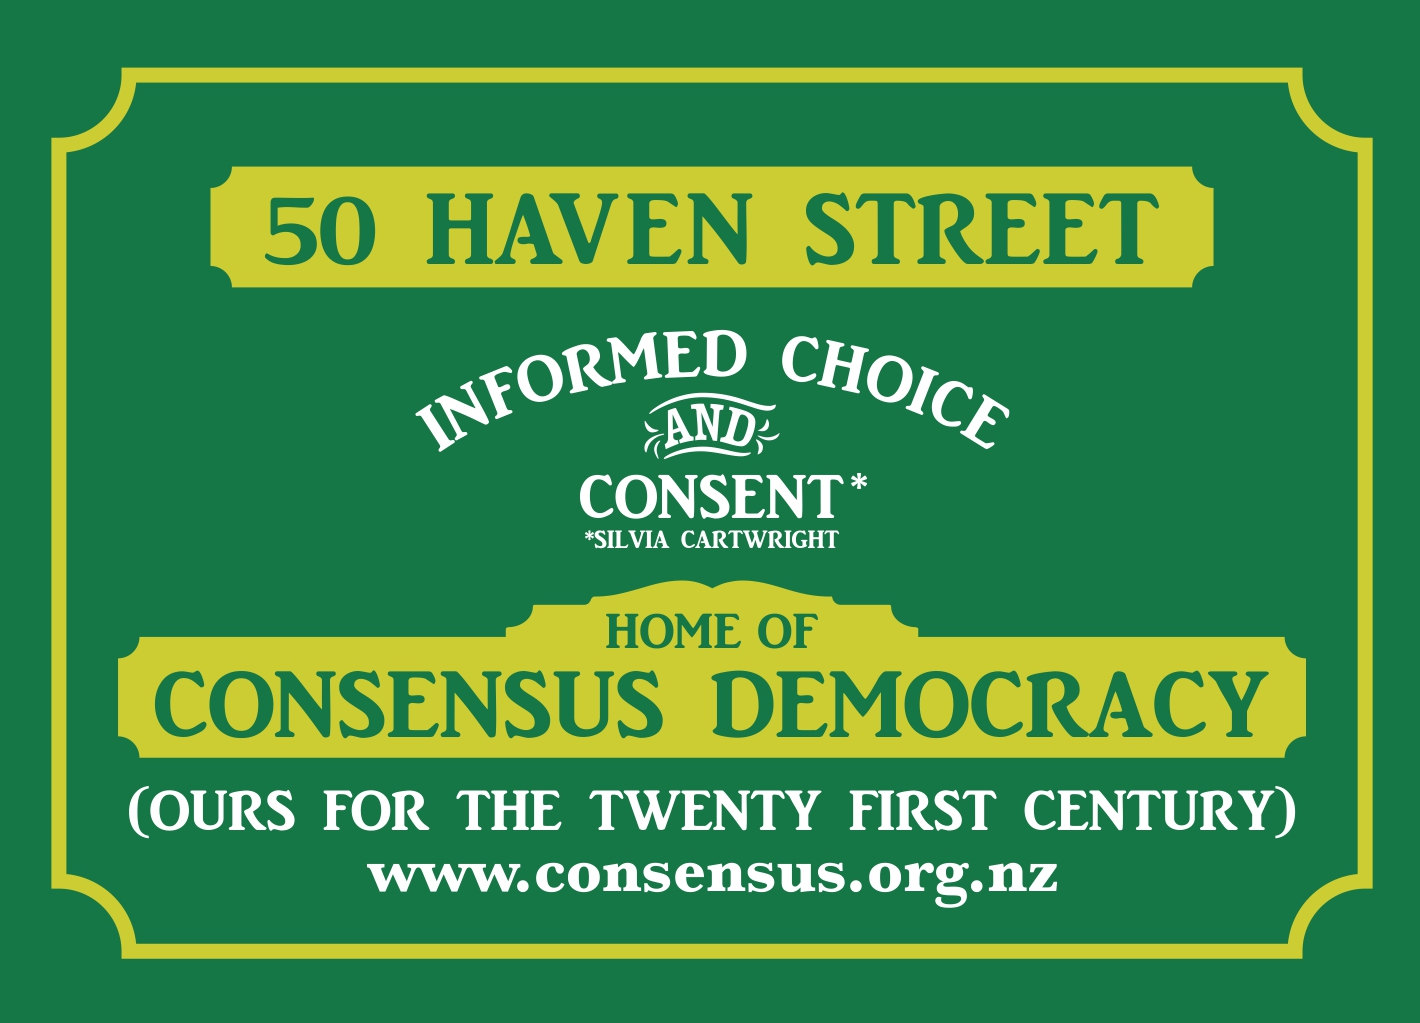 Consensus Democracy